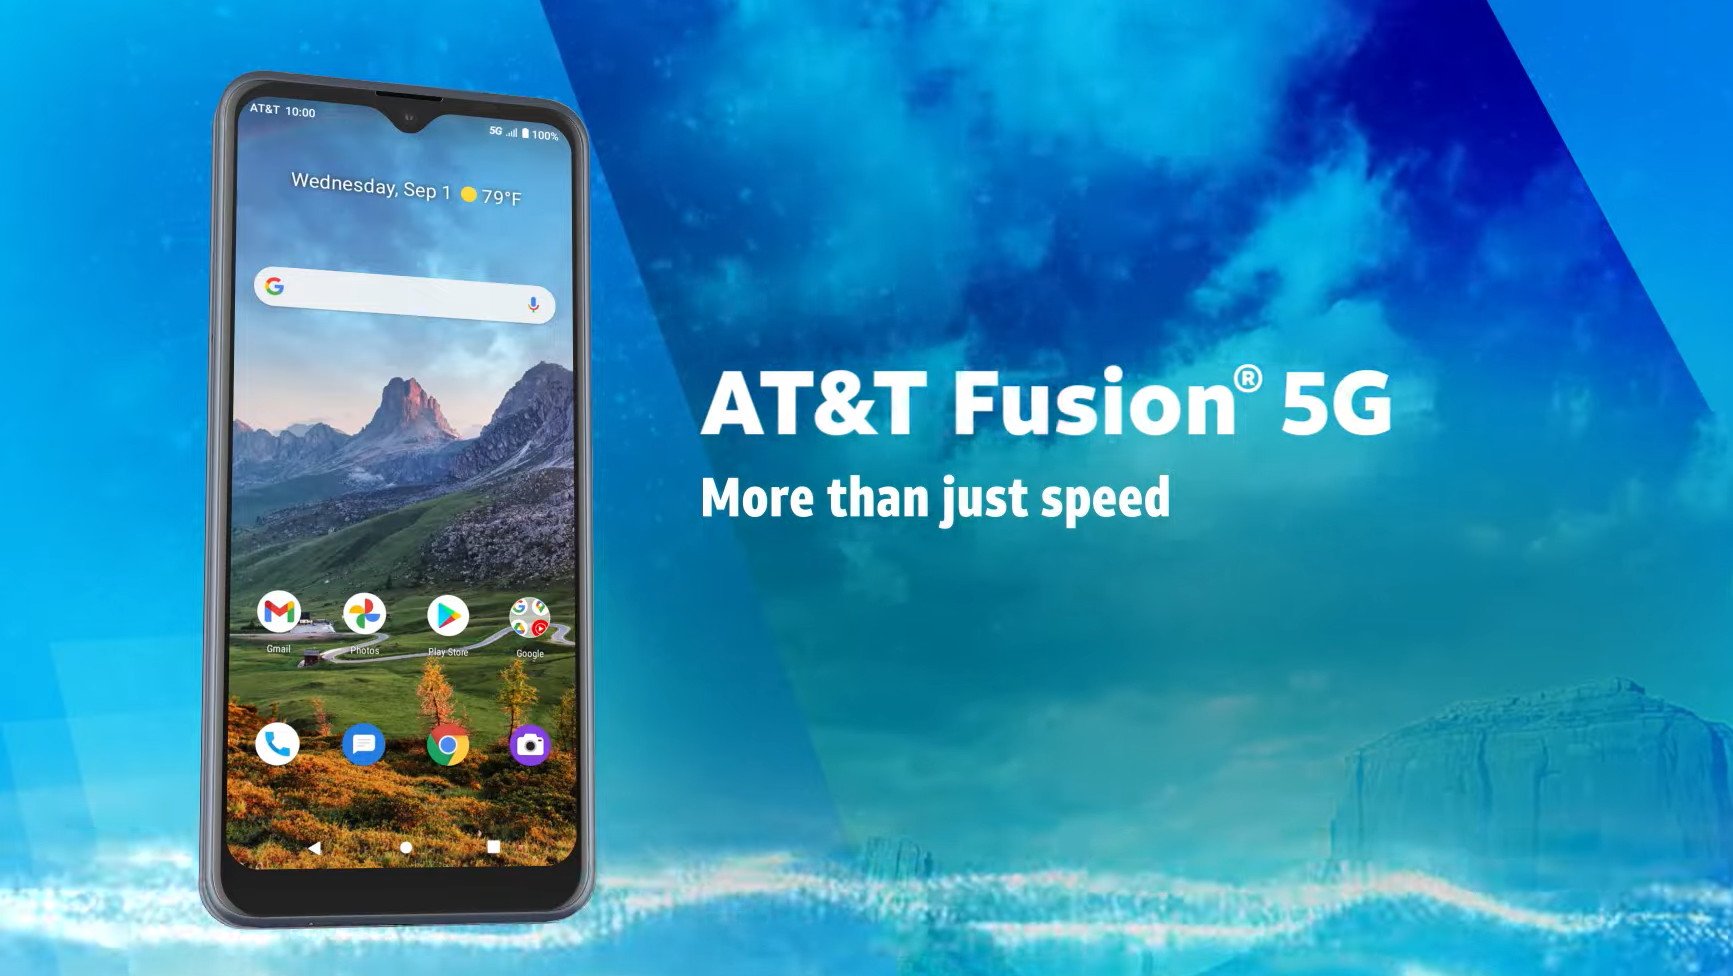 AT&T Fusion 5G